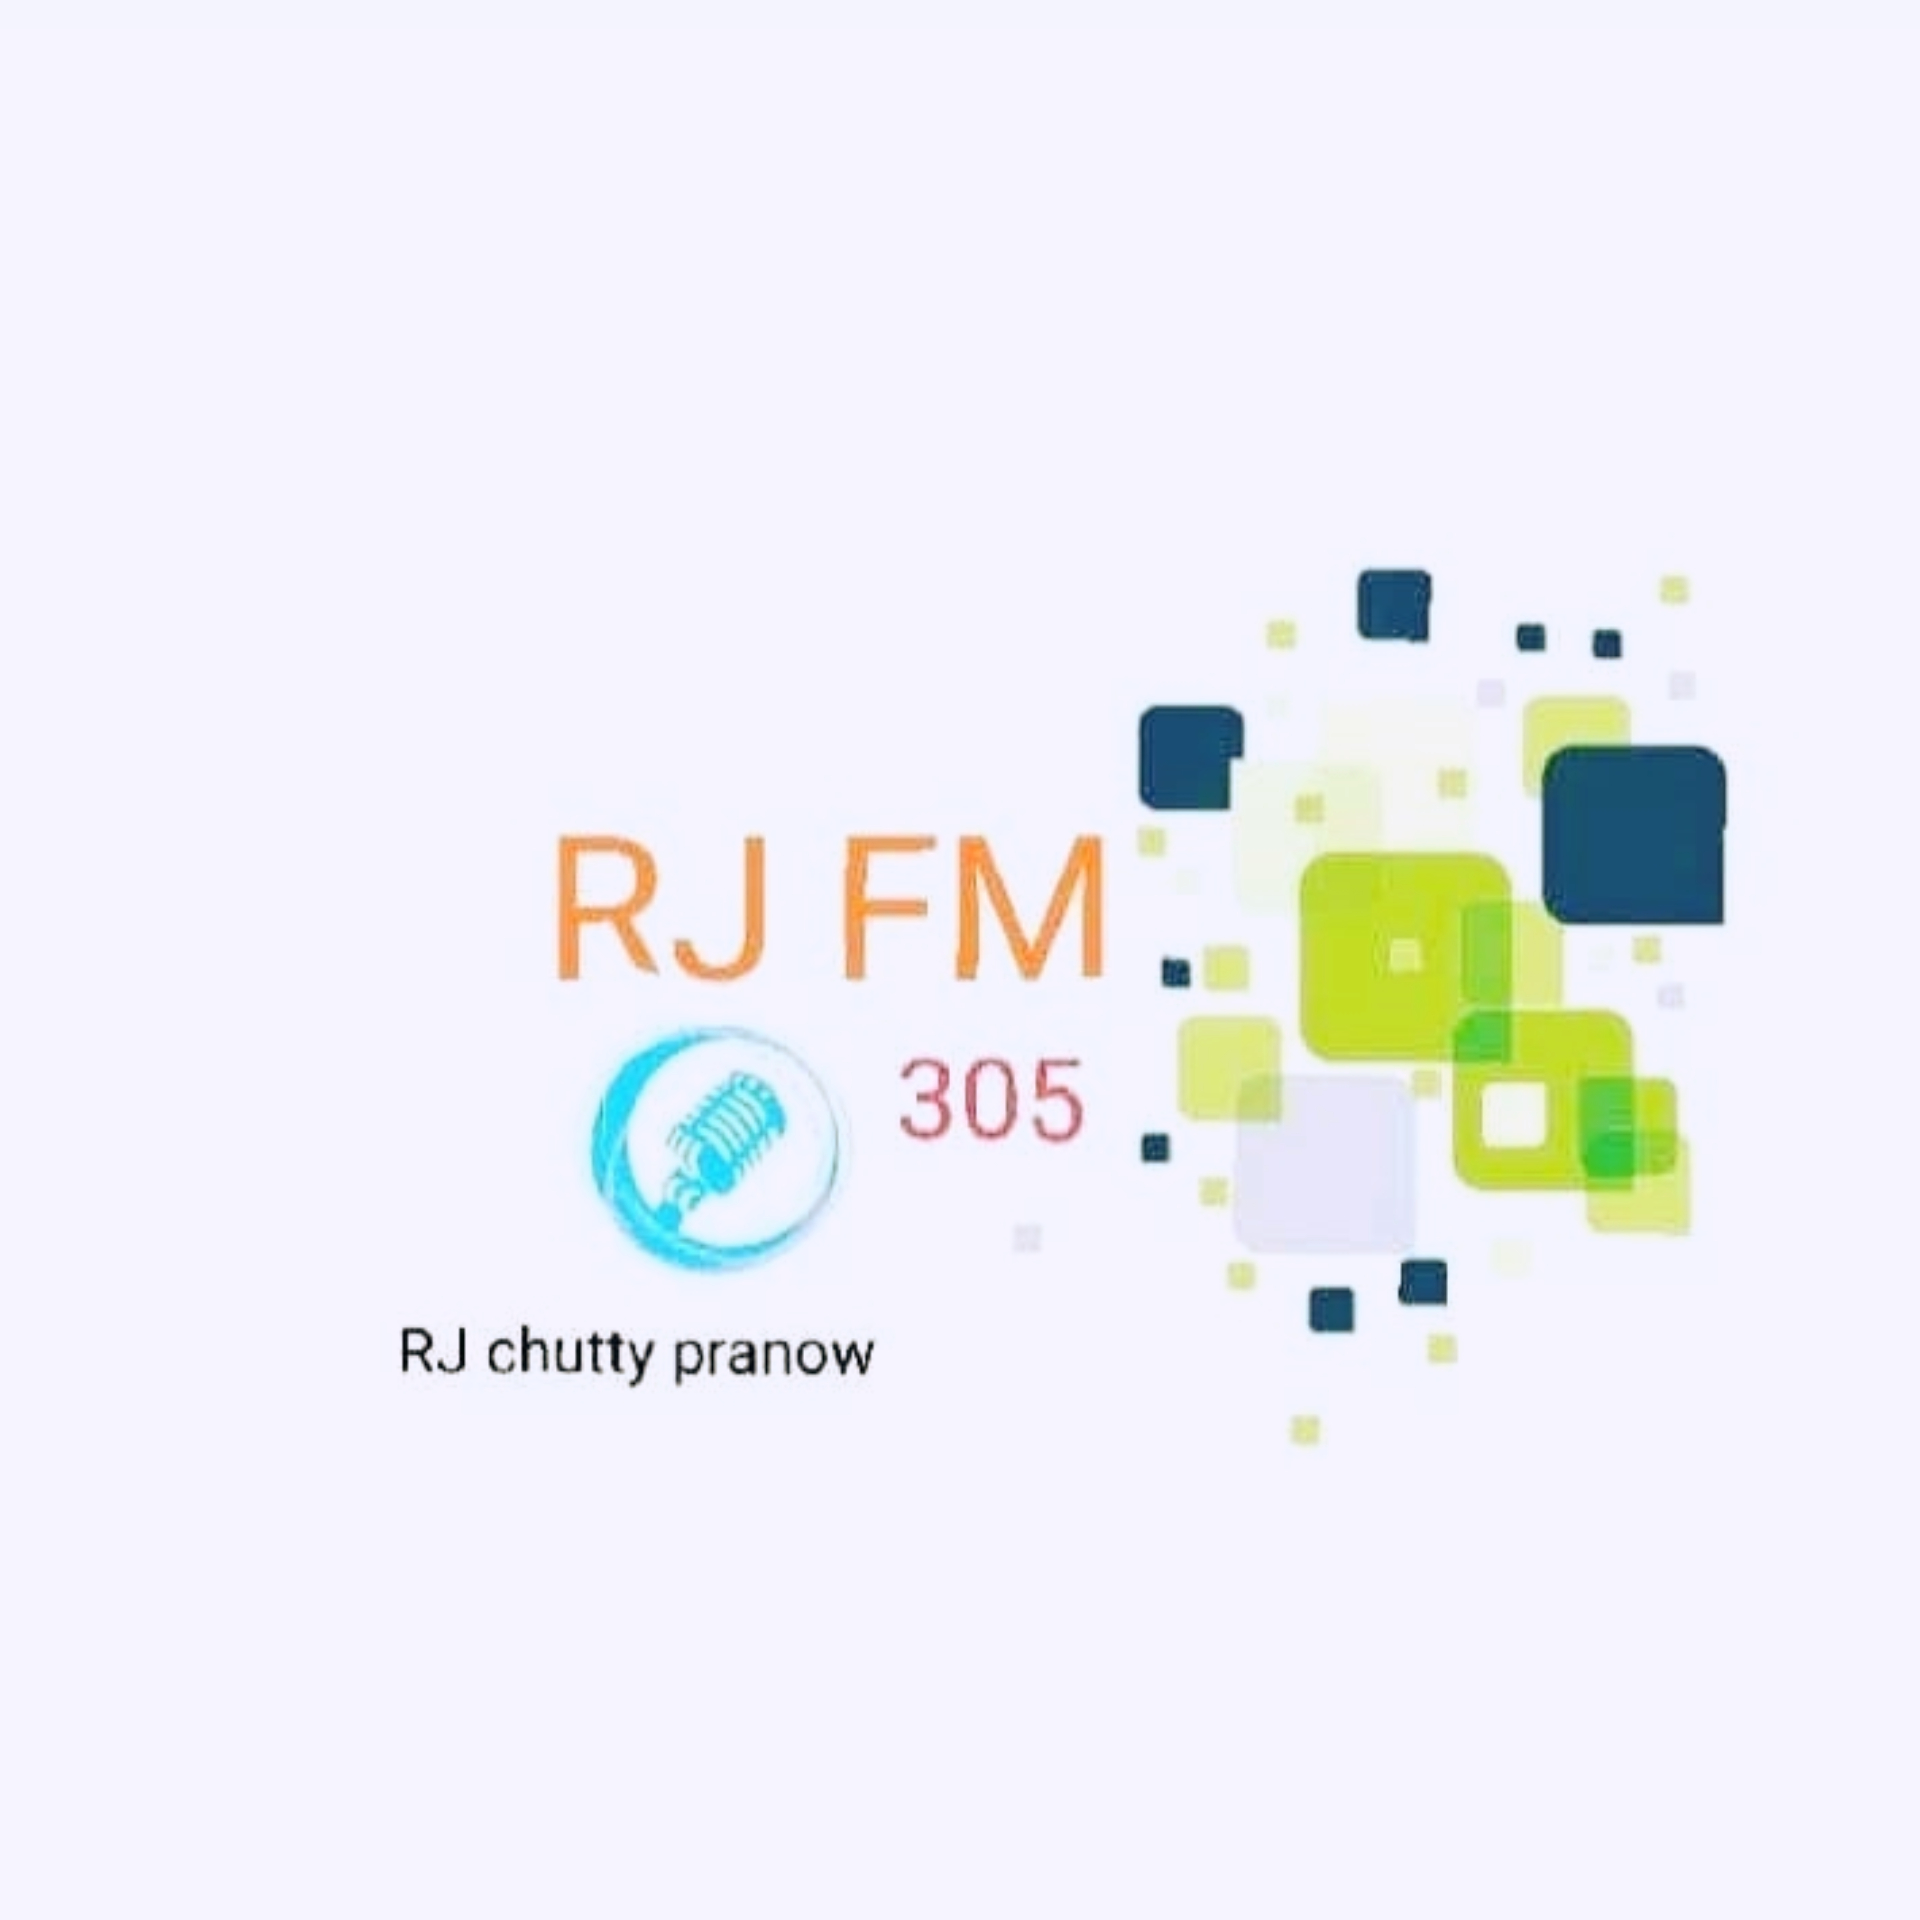 RJ FM 305